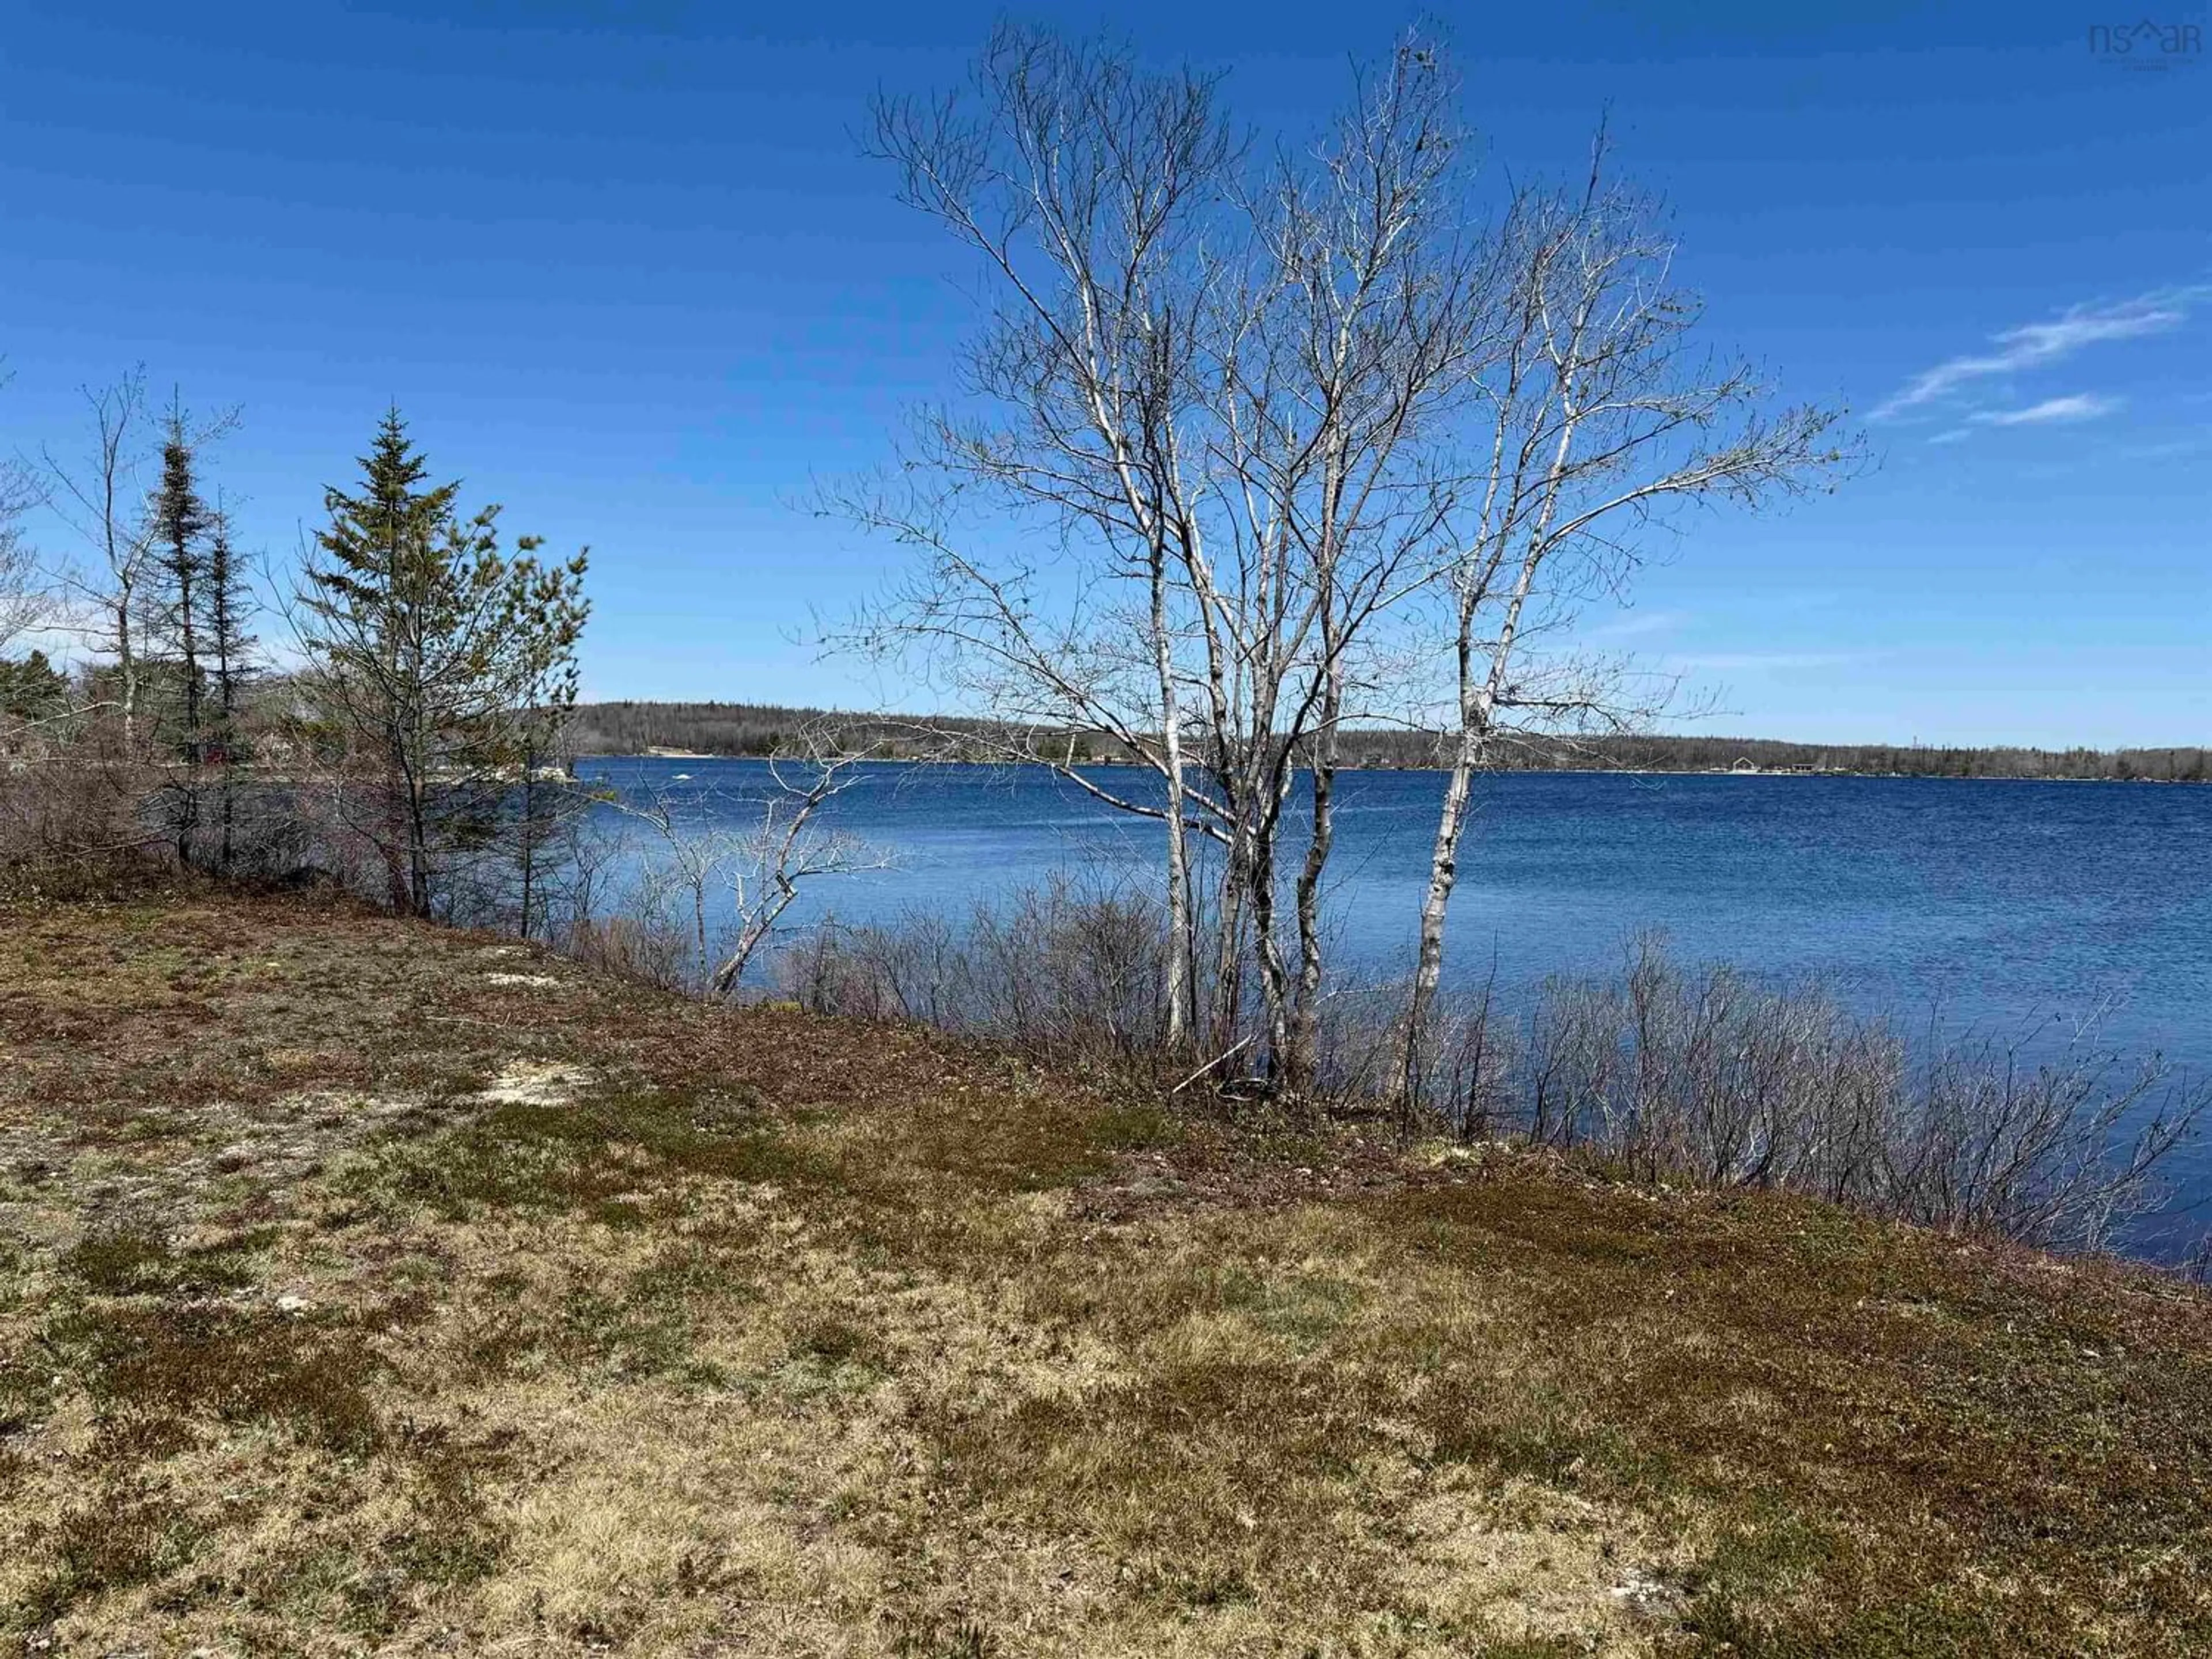 Lakeview for 38 Lake View Dr, Goose Lake Nova Scotia B0W 1E0